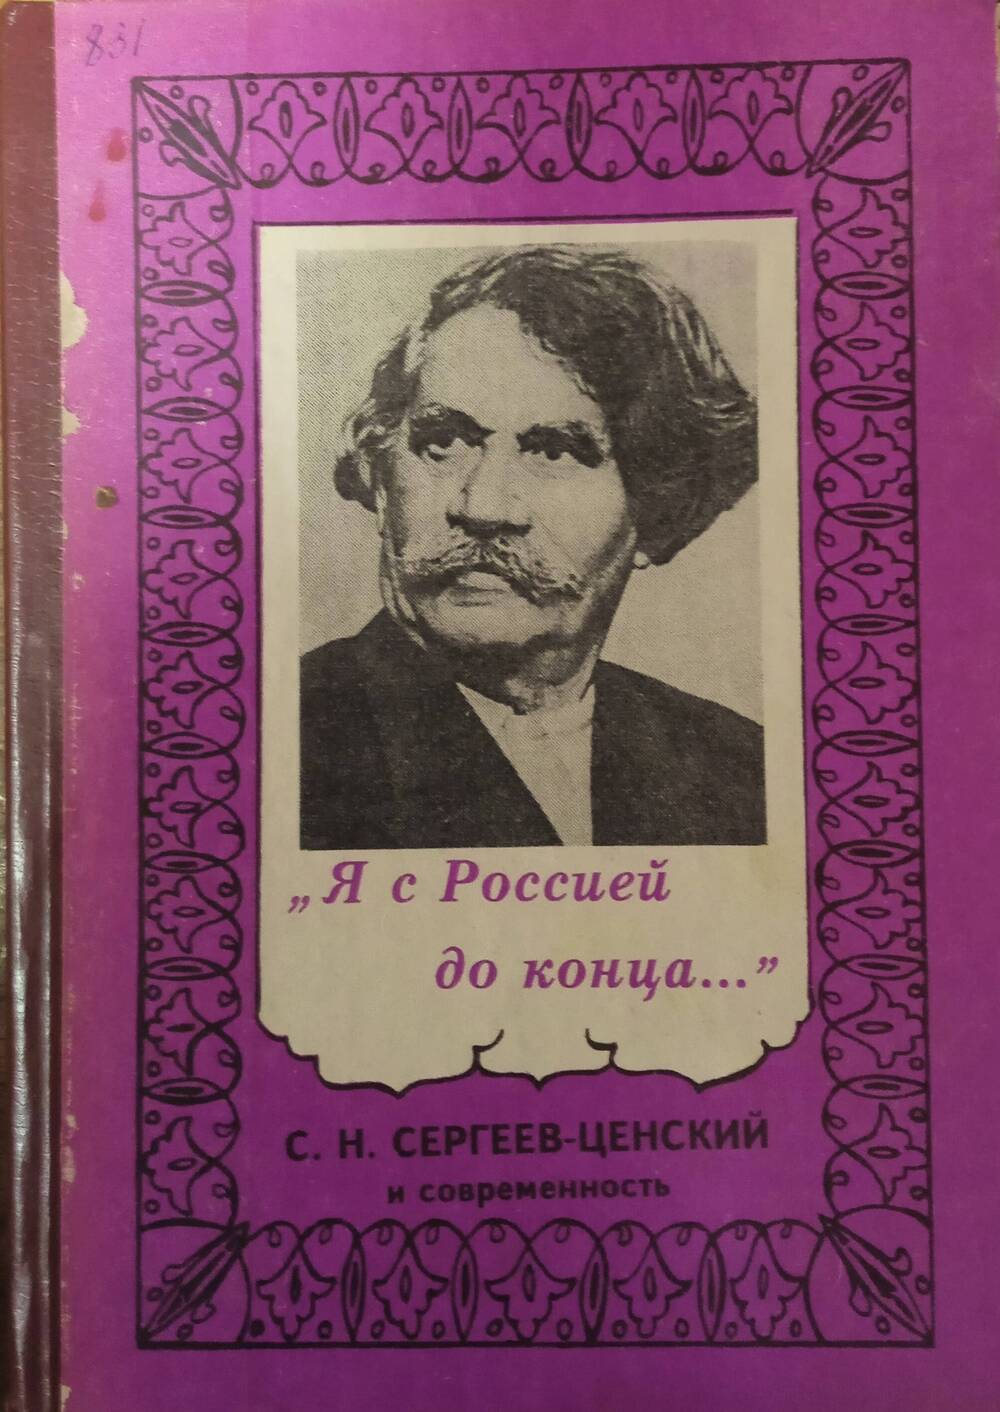 Книга Я с Россией до конца... С.Н. Сергеев - Ценский и современность.